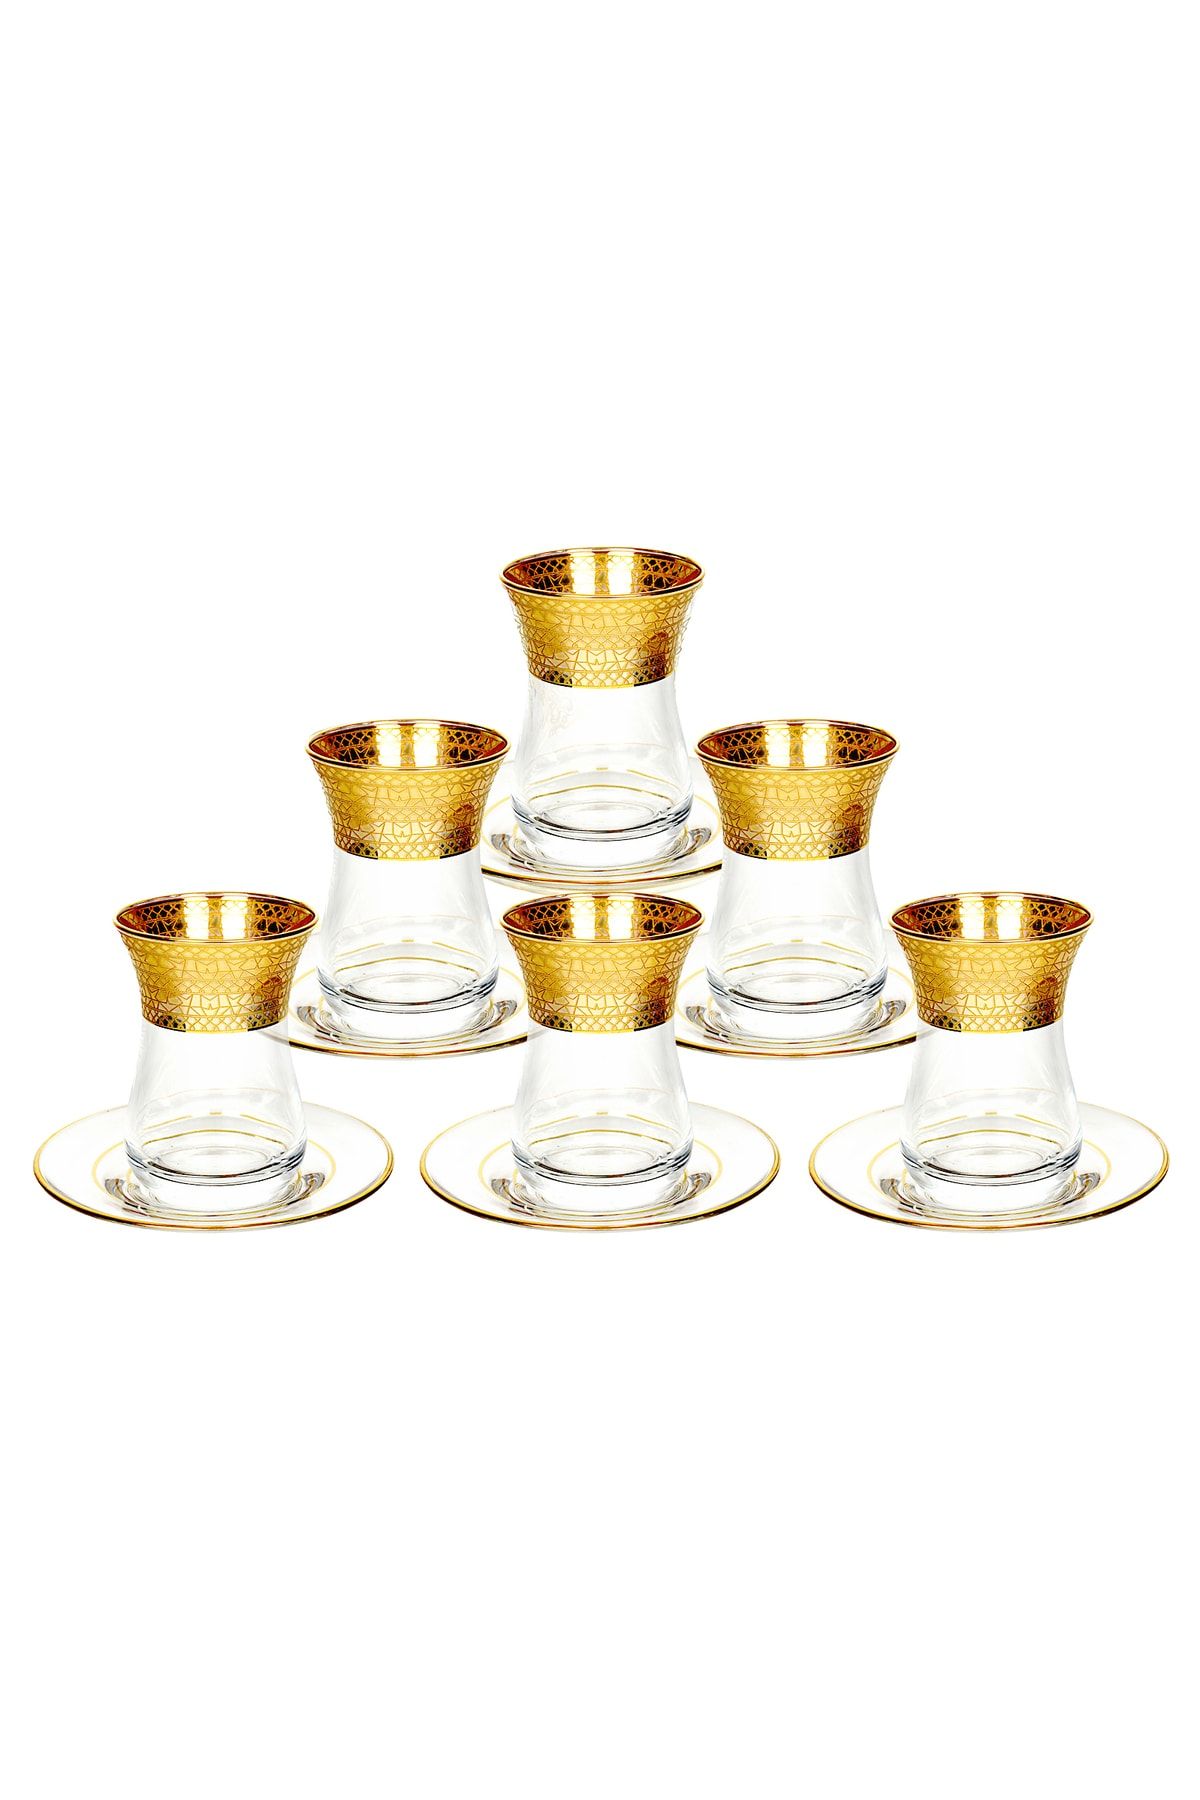 Paşabahçe Altın Yaldızlı Çay Bardağı Seti, 12 Parça, Ajda, 12 Ayar Altın